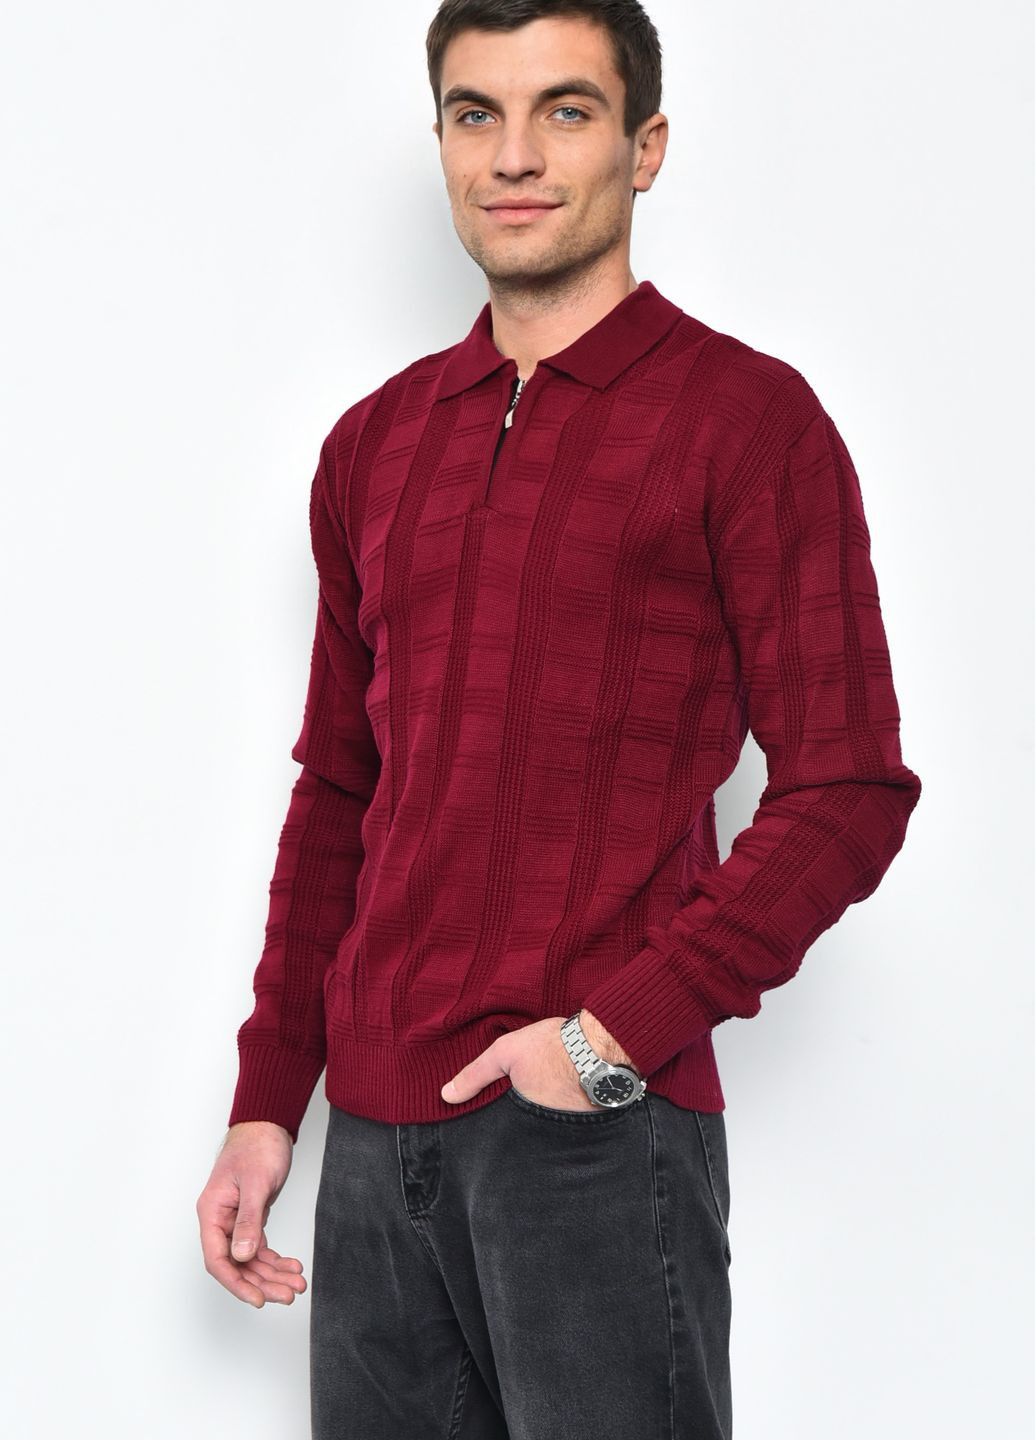 Бордовый демисезонный свитер мужской бордового цвета акриловый пуловер Let's Shop